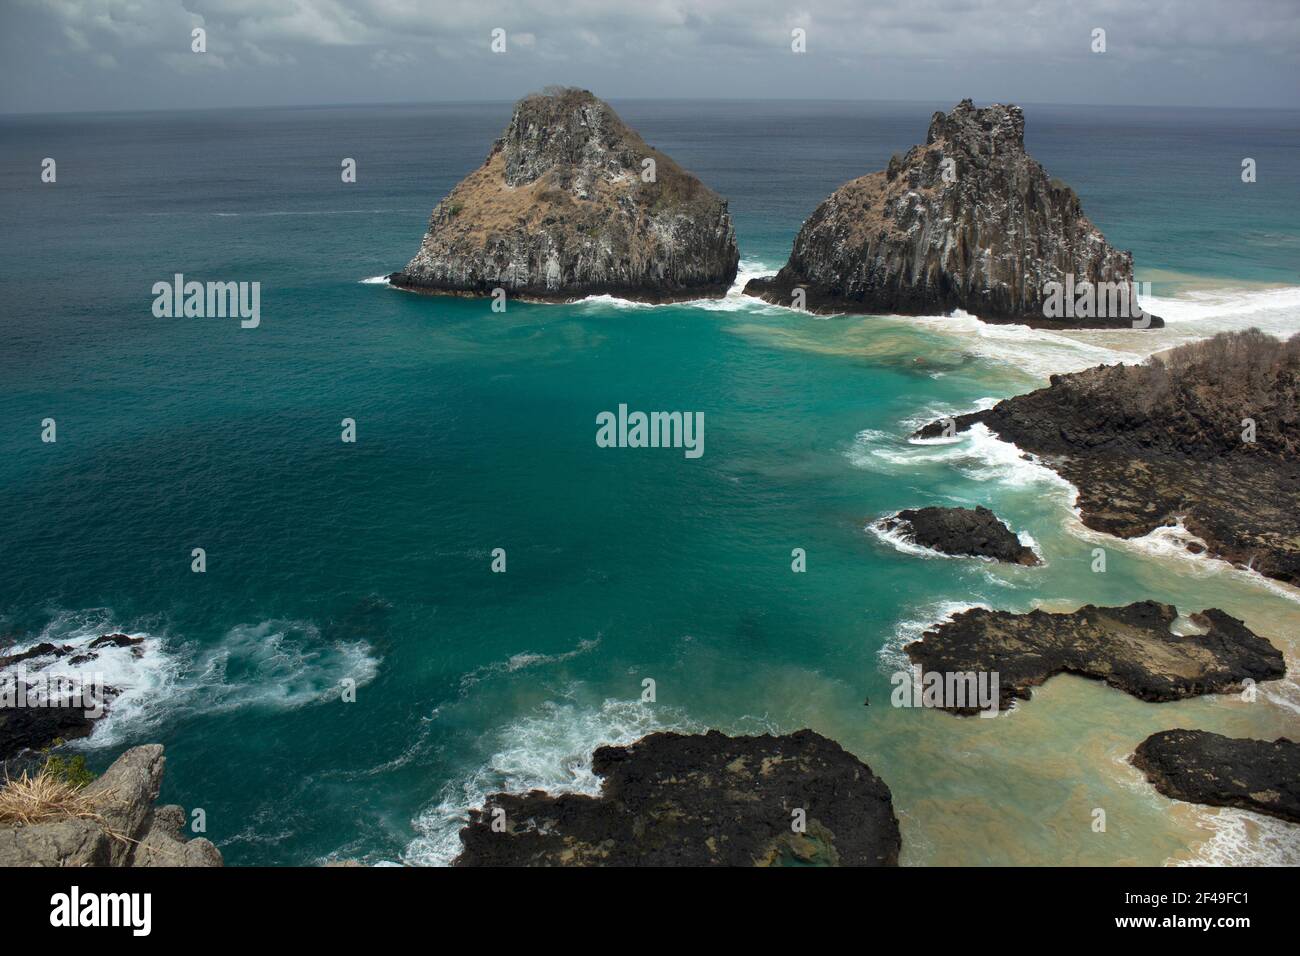 Strand Baia dos Porcos auf den Inseln Fernando de Noronha, Brasilien  Stockfotografie - Alamy